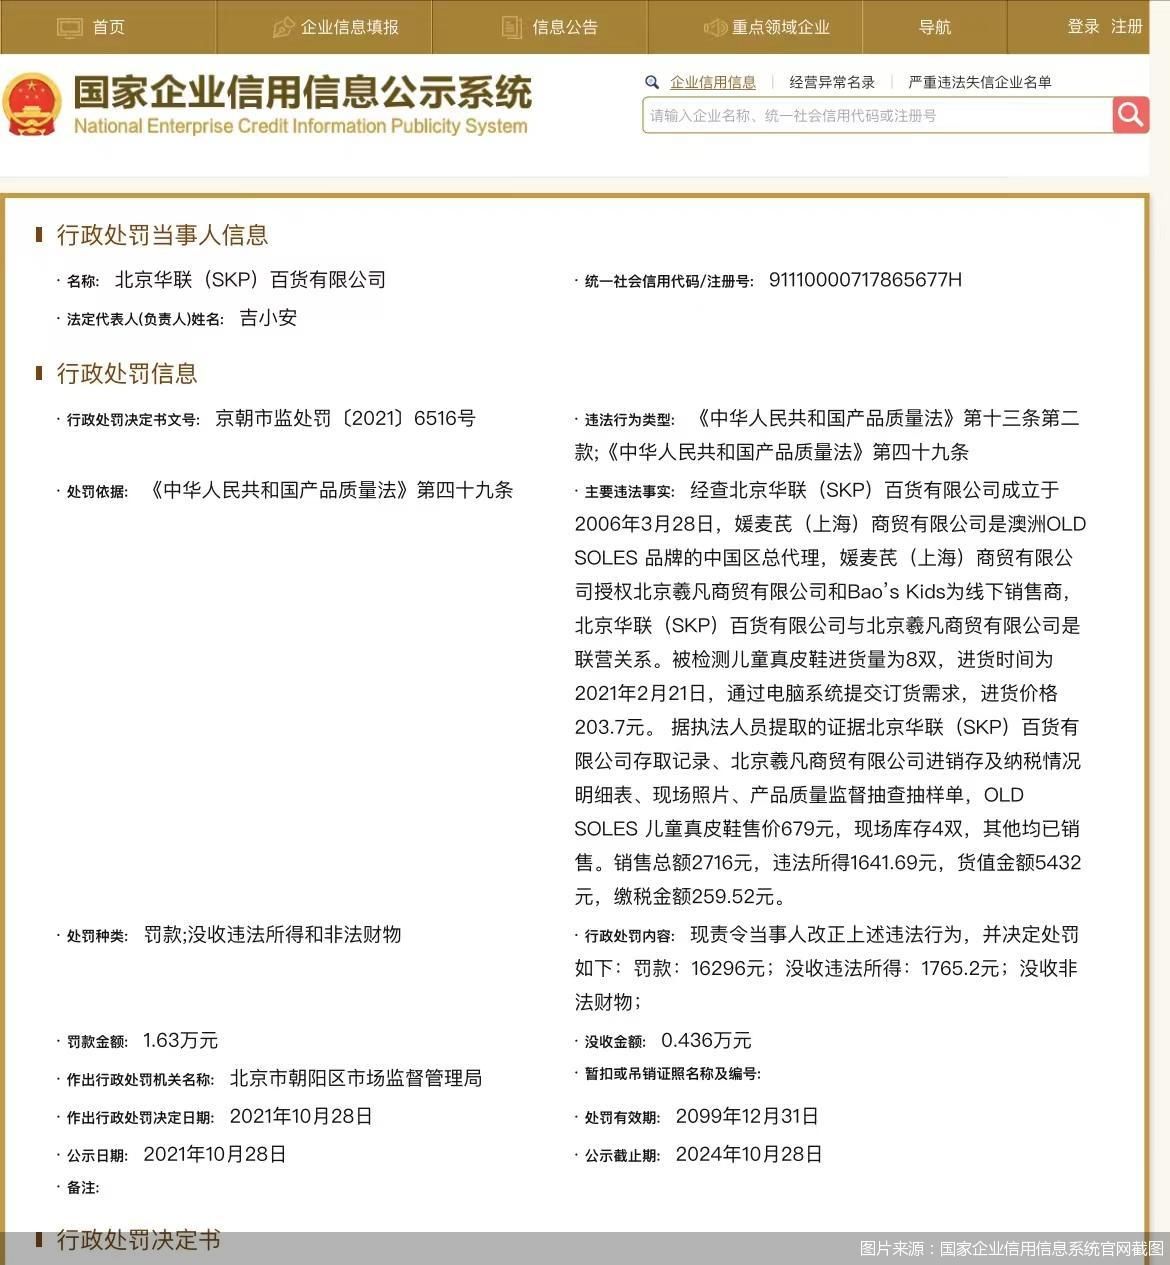 进价仅203元卖679元 北京SKP被罚并没收违法所得和非法财物